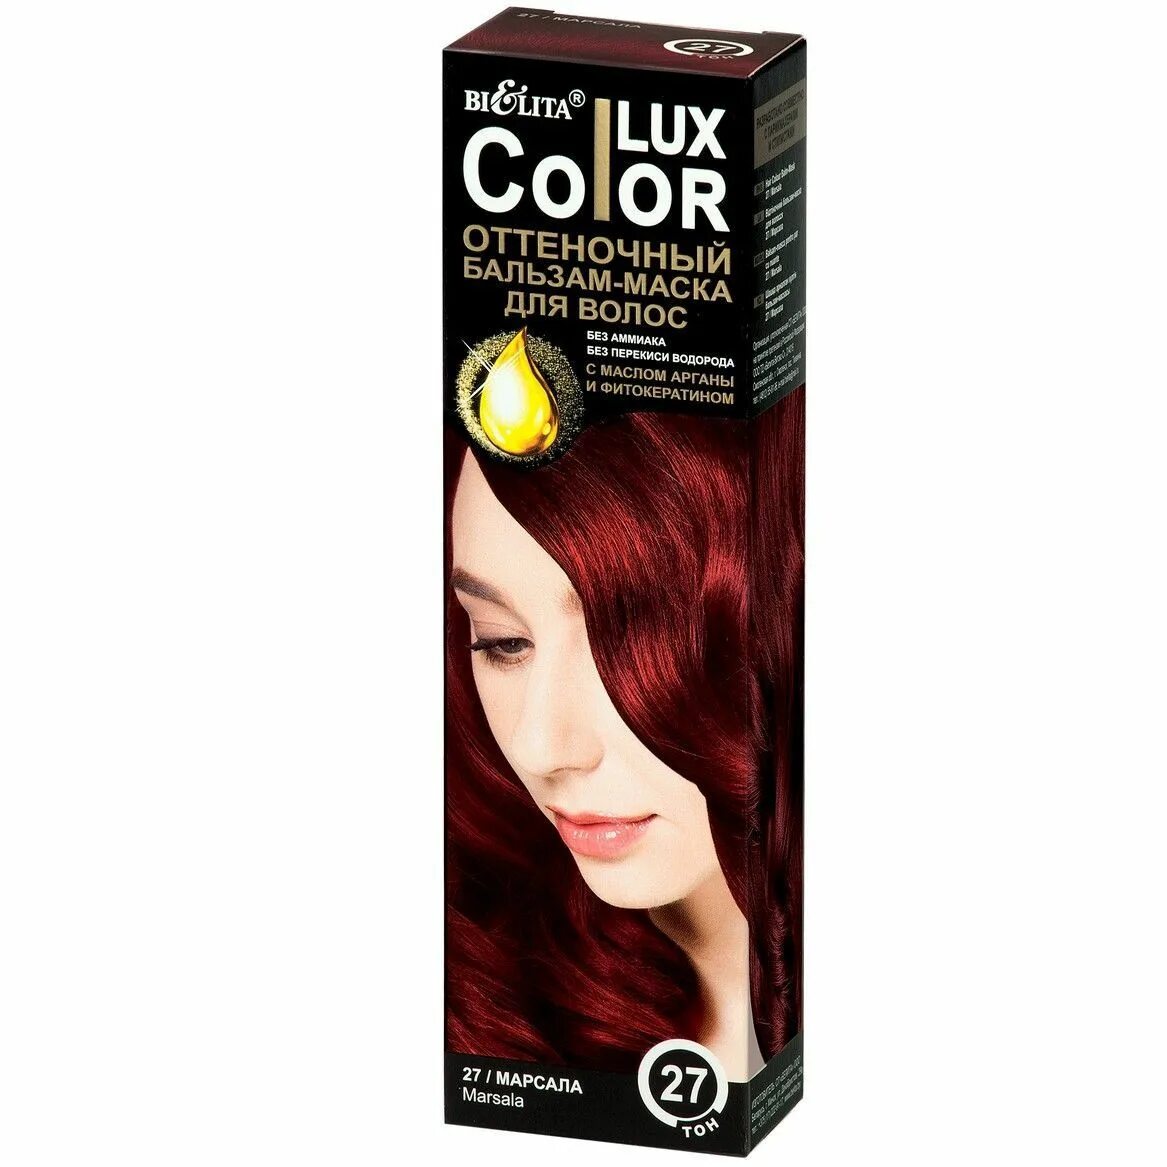 Lux Color оттеночный бальзам-маска для волос тон 27 марсала (туба 100 мл). Оттеночный бальзам Белита Color Lux. Color Lux бальзам маска оттеночная для волос тон 27 марсала 100мл. Оттеночный бальзам Белита Color Lux палитра. Оттеночный бальзам белита отзывы